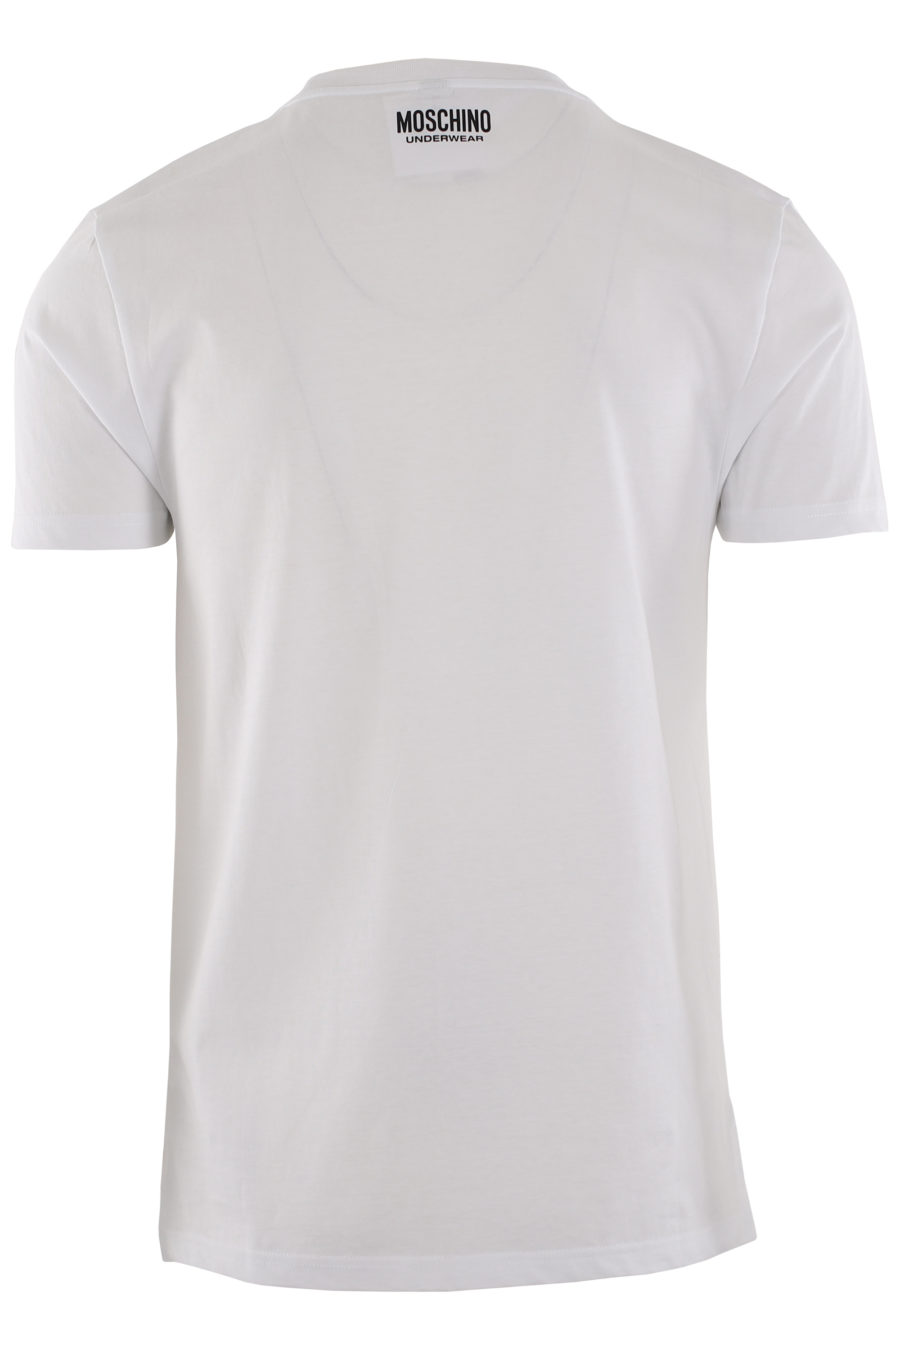 Camiseta blanca con logo en cinta en hombros - IMG 0393